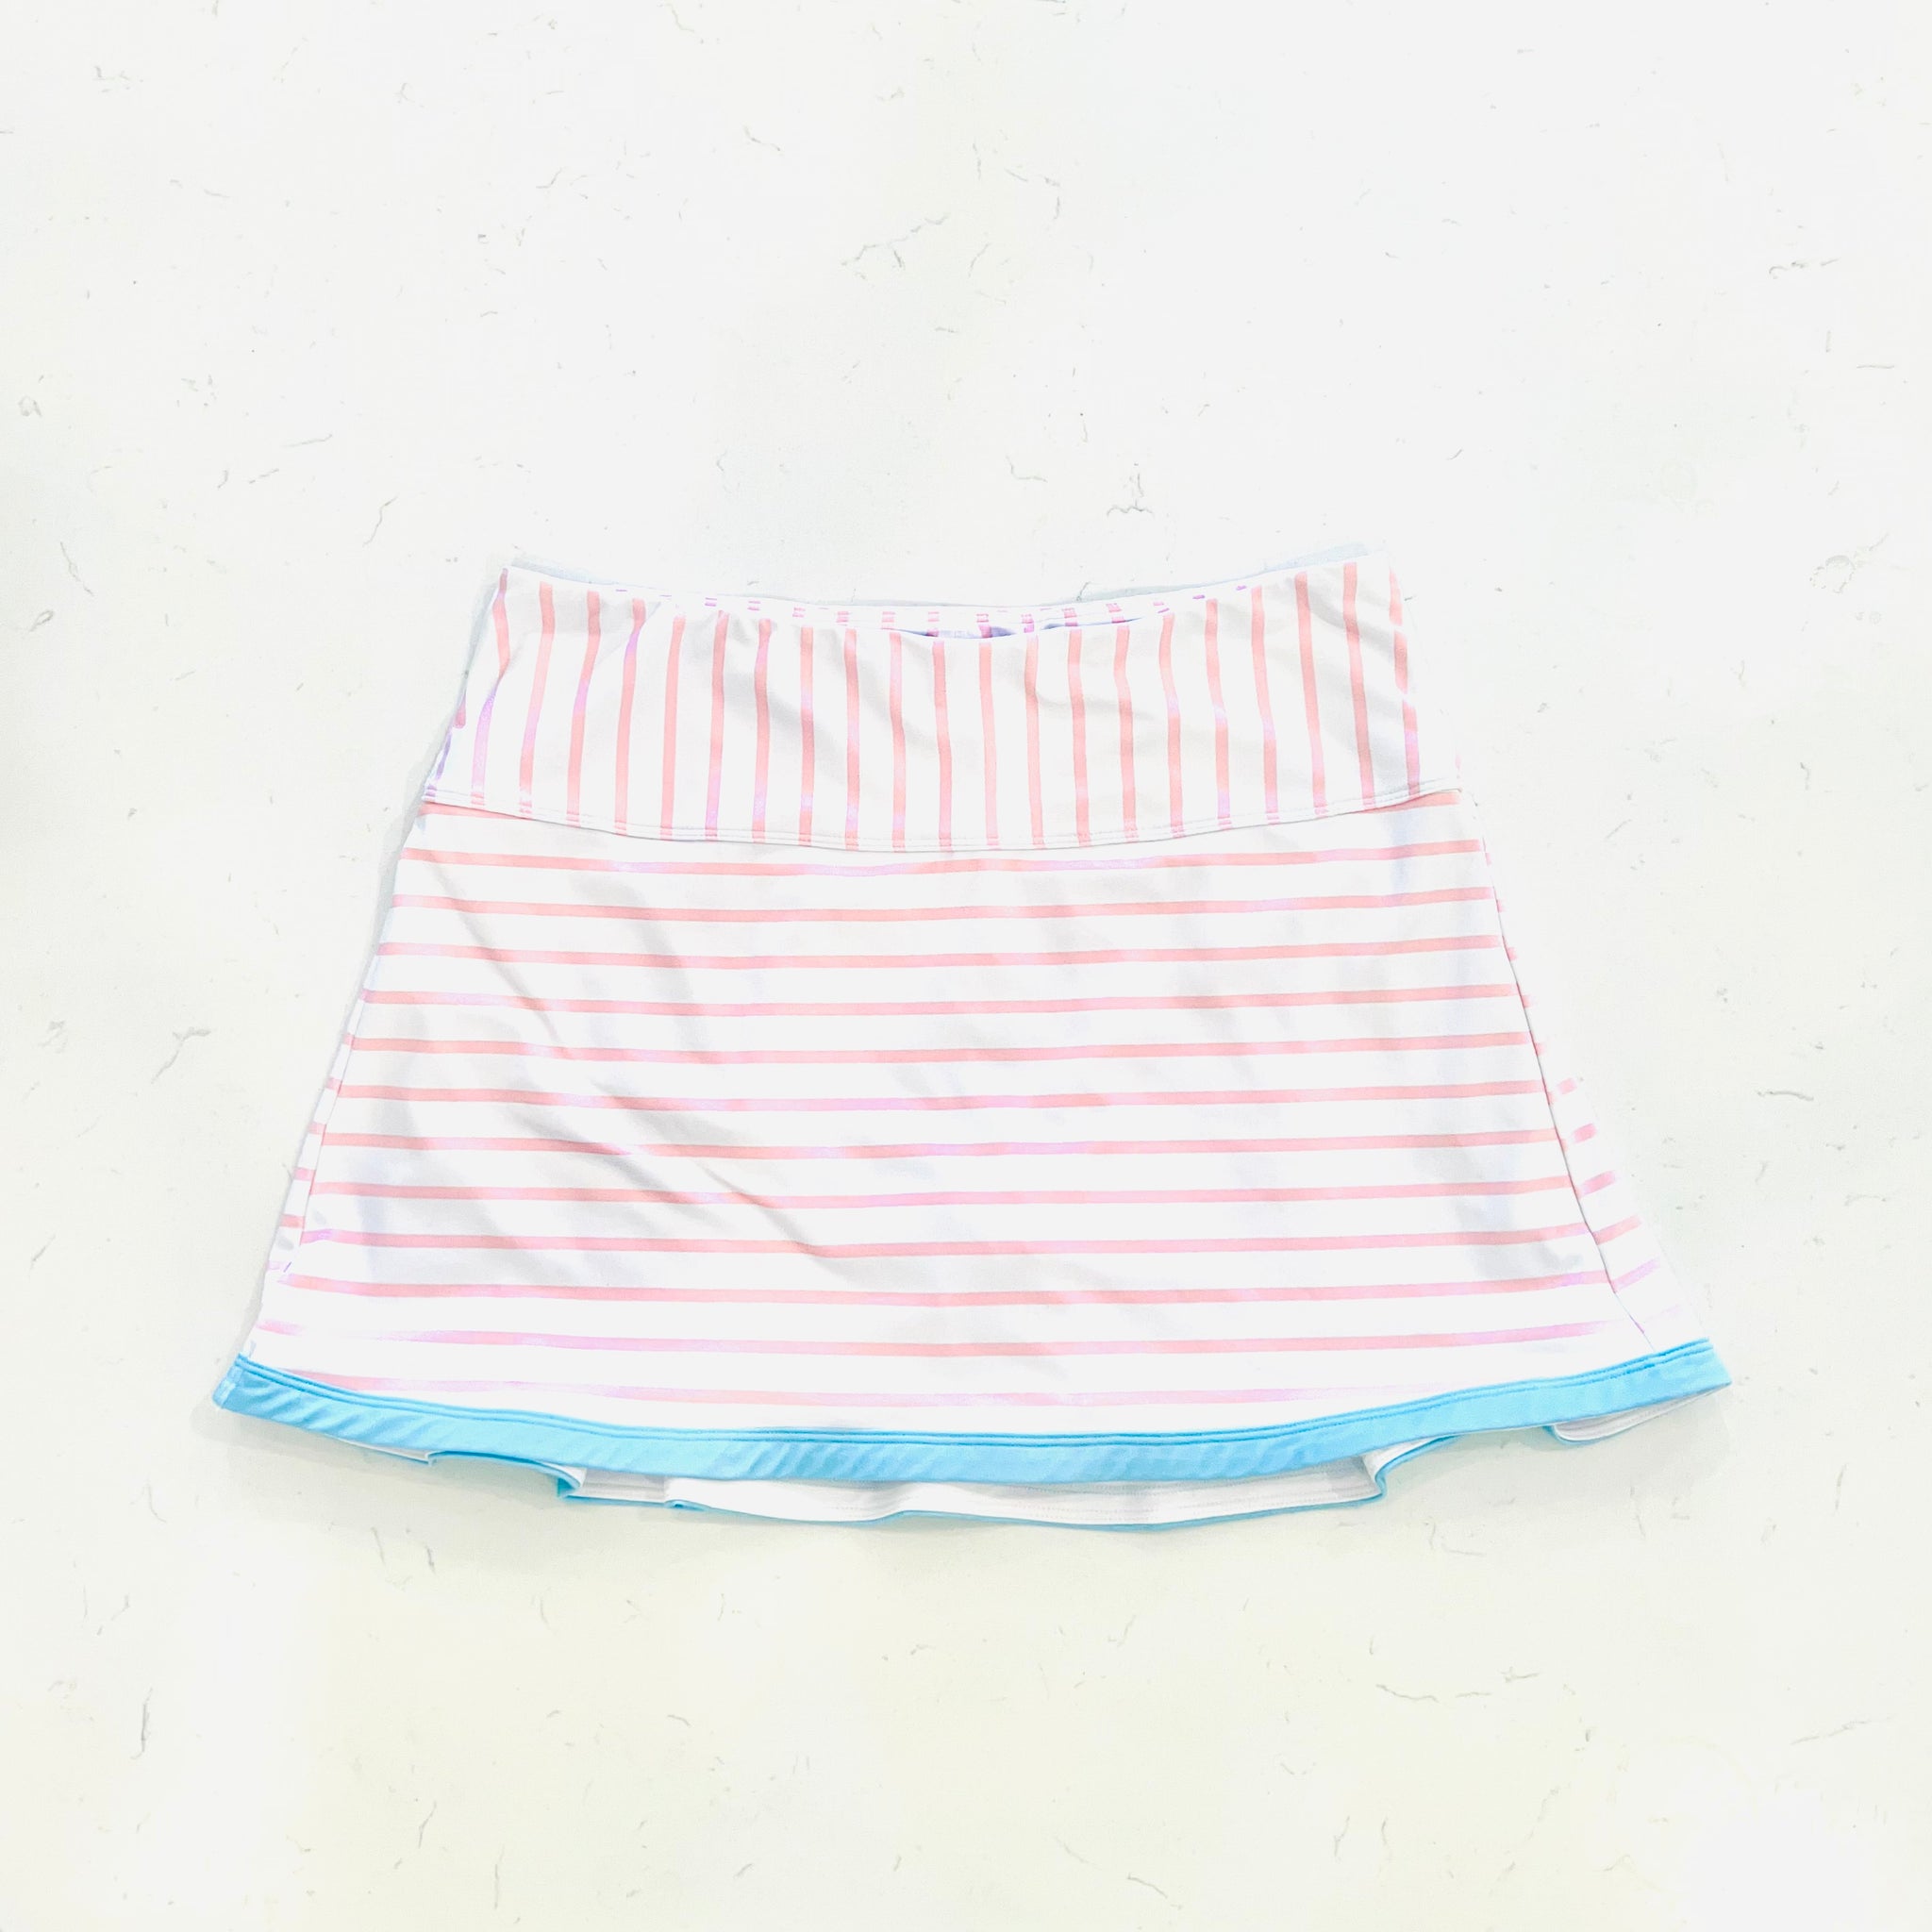 Watercolor Skirt